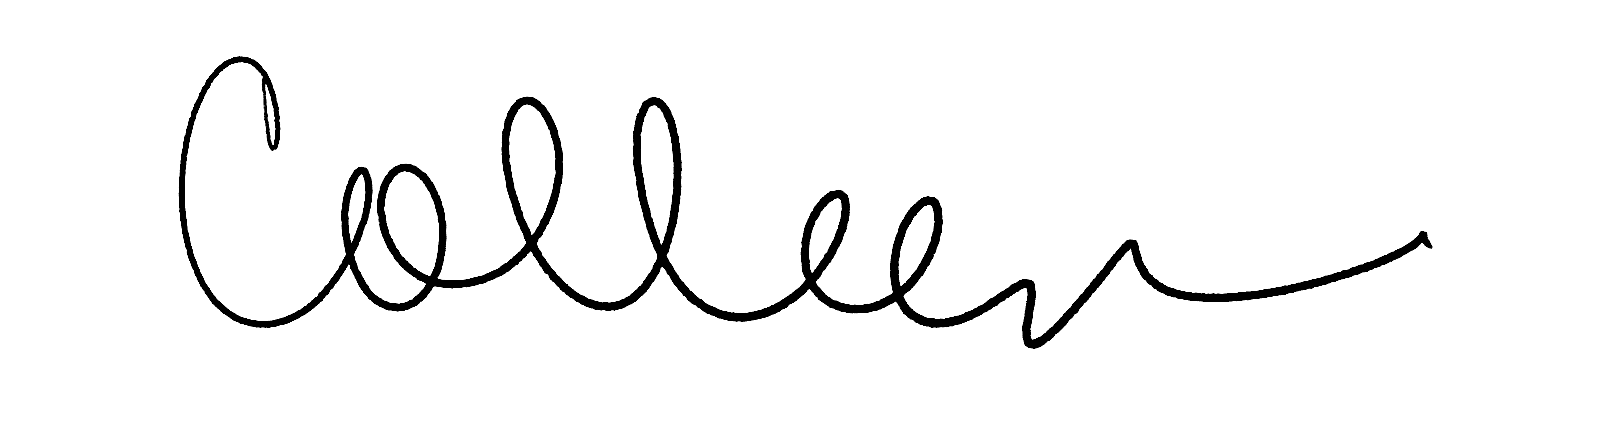 Colleen Skinner's signature